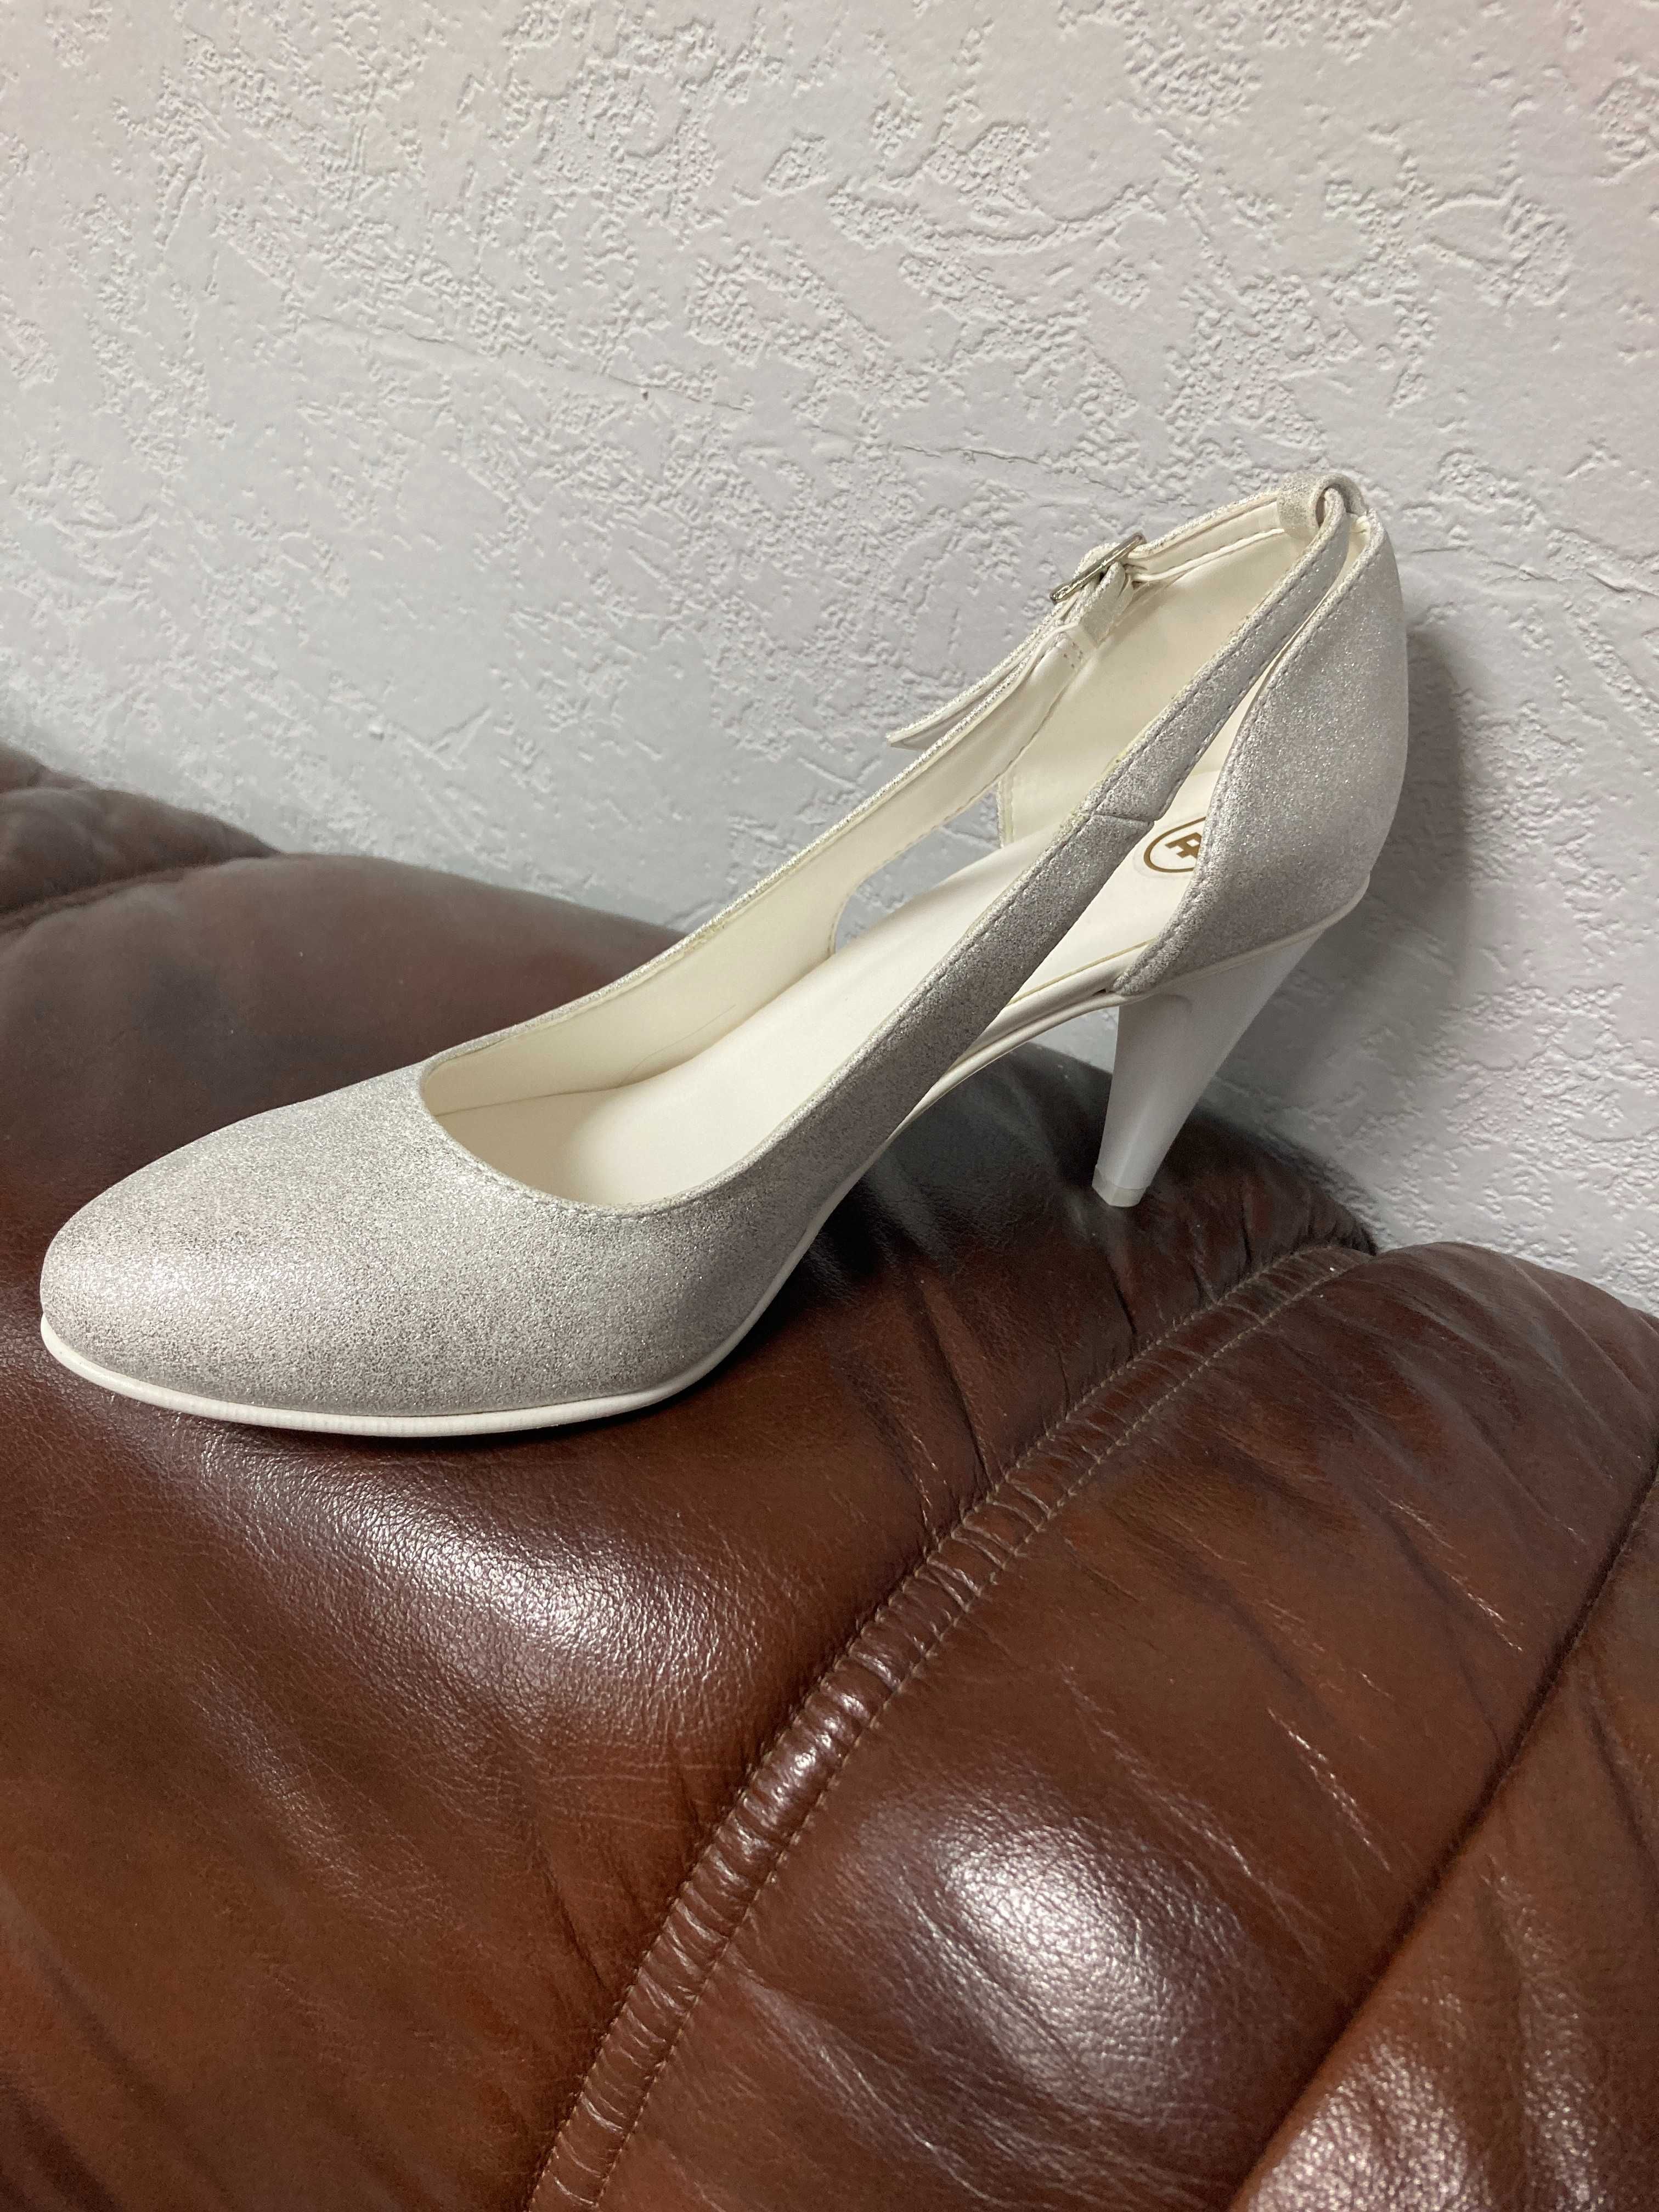 Nowe buty, czółenka srebrne, r. 38, wys. 8 cm, wyprzedaż